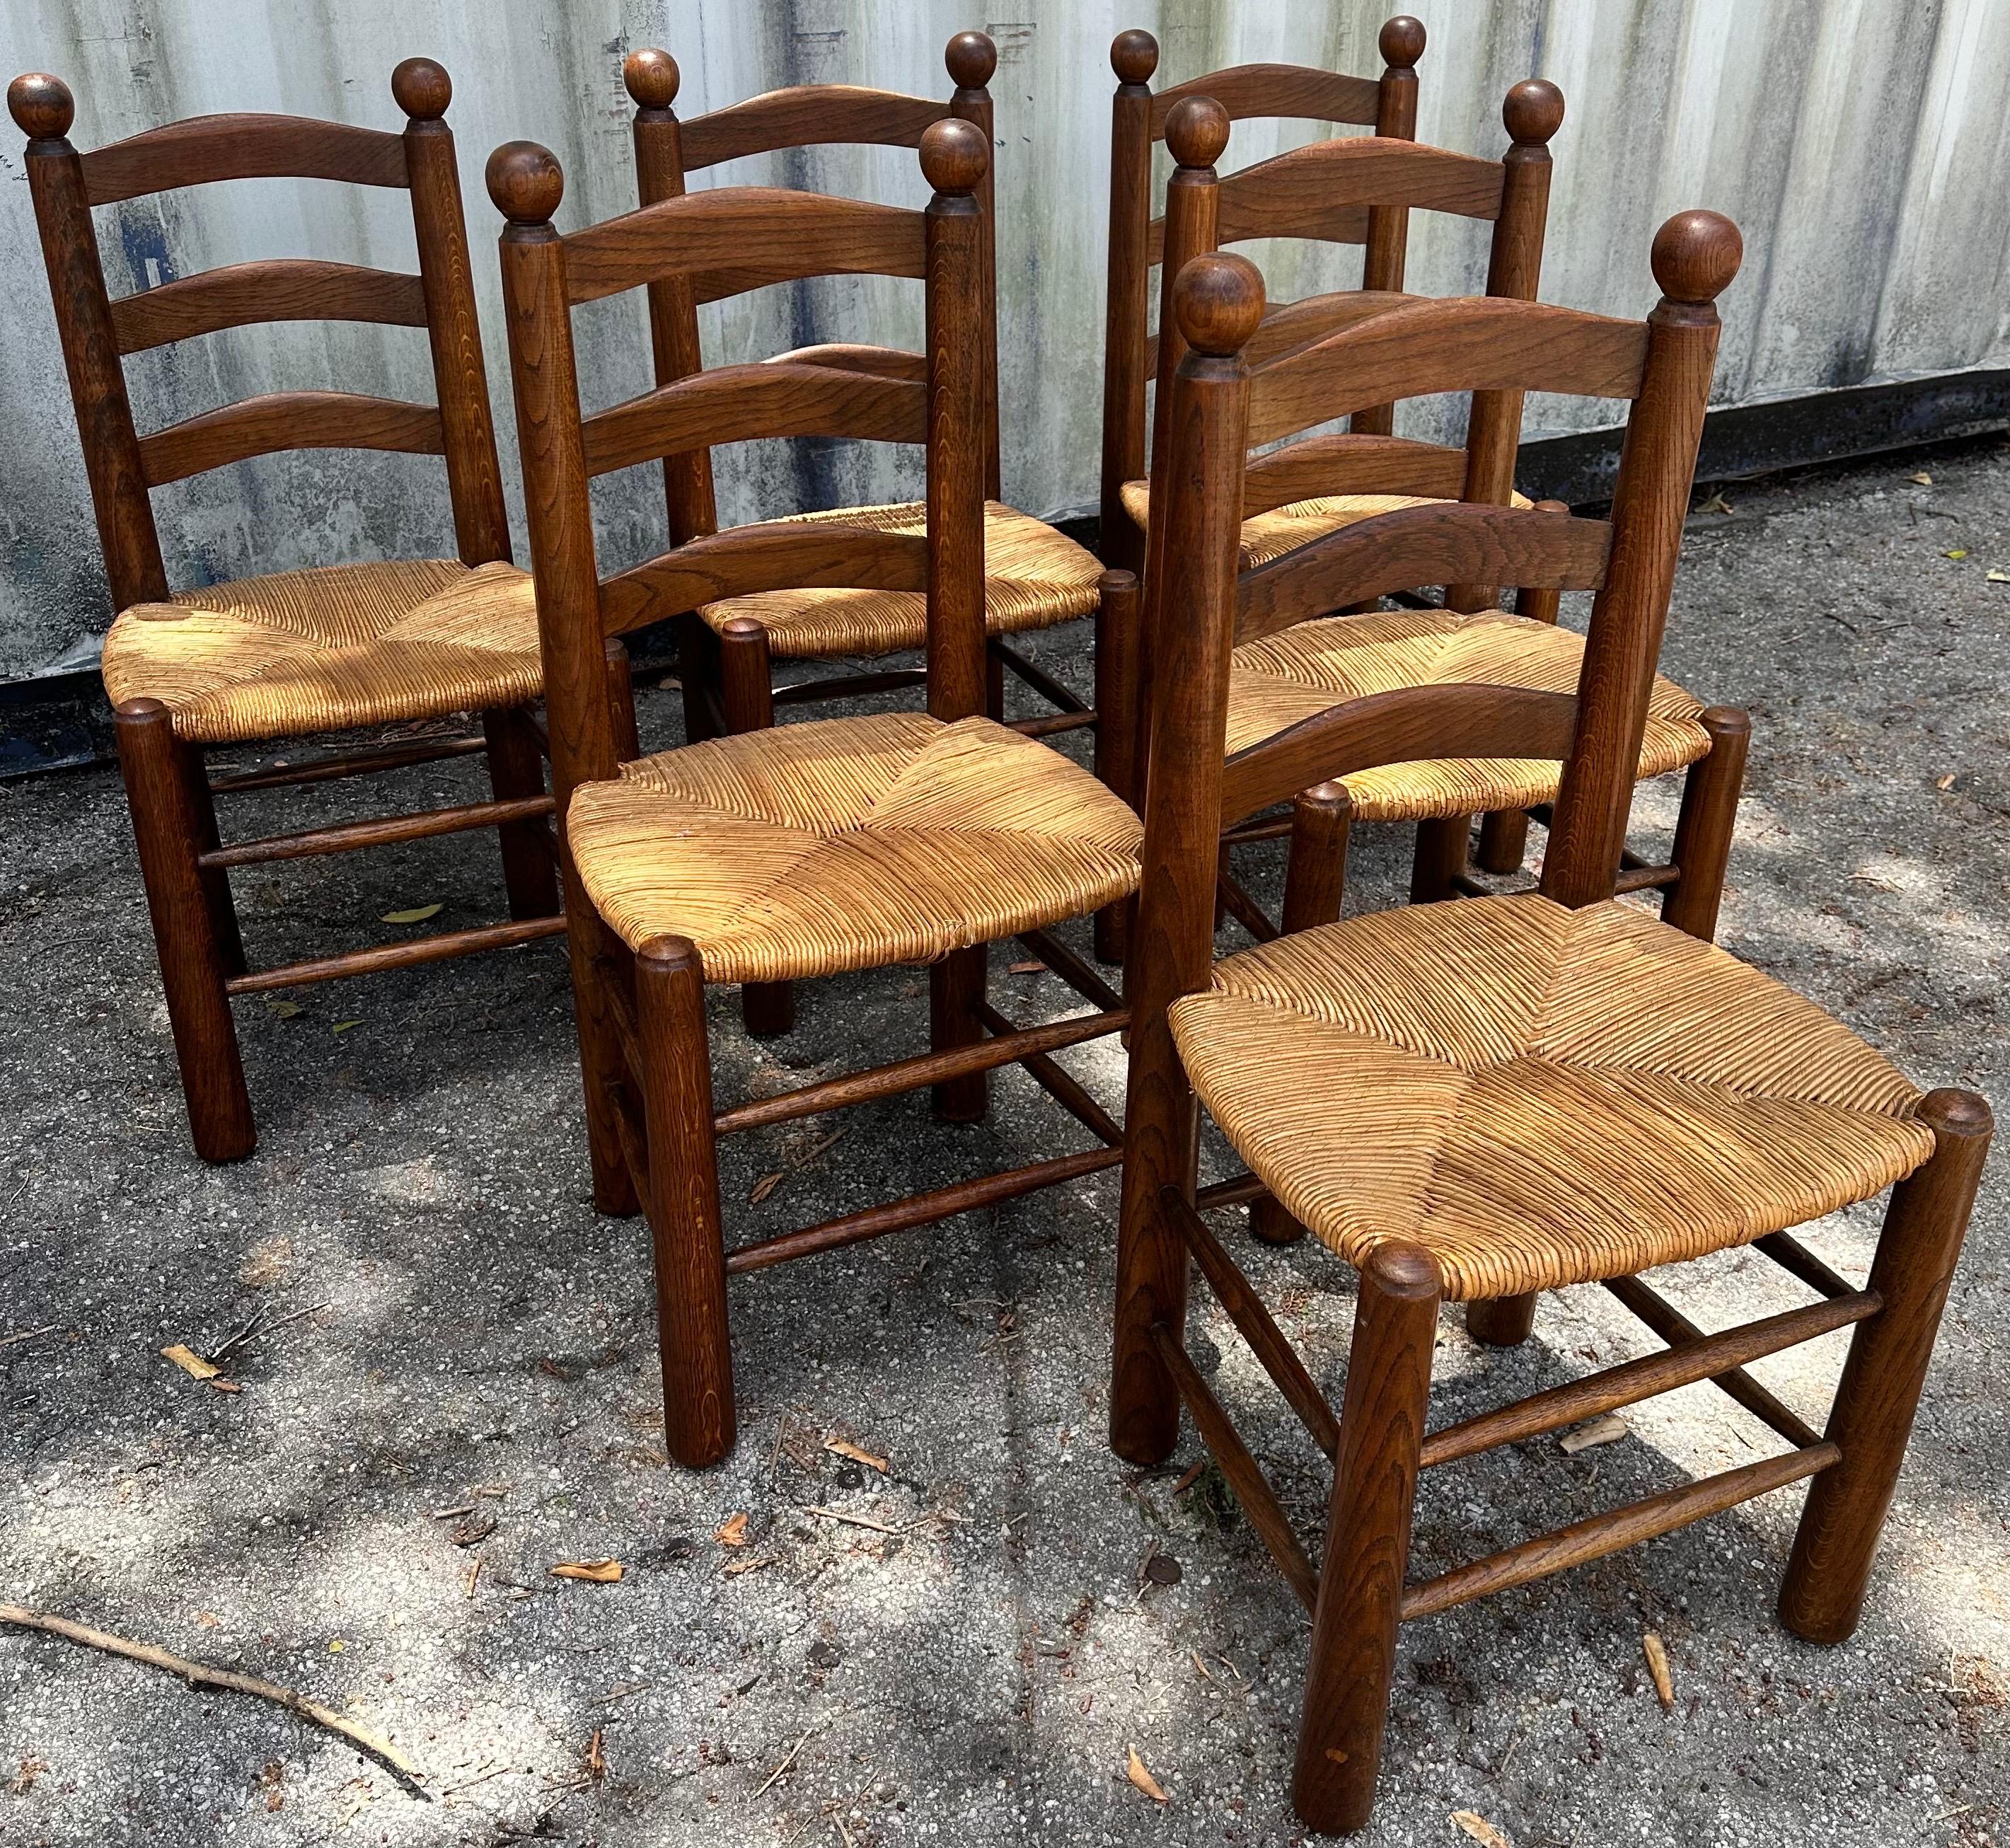 Ensemble de 6 chaises en chêne et jonc de style Charlotte Perriand.
Solides et robustes.
Très bon état vintage, le jonc est en bon état.